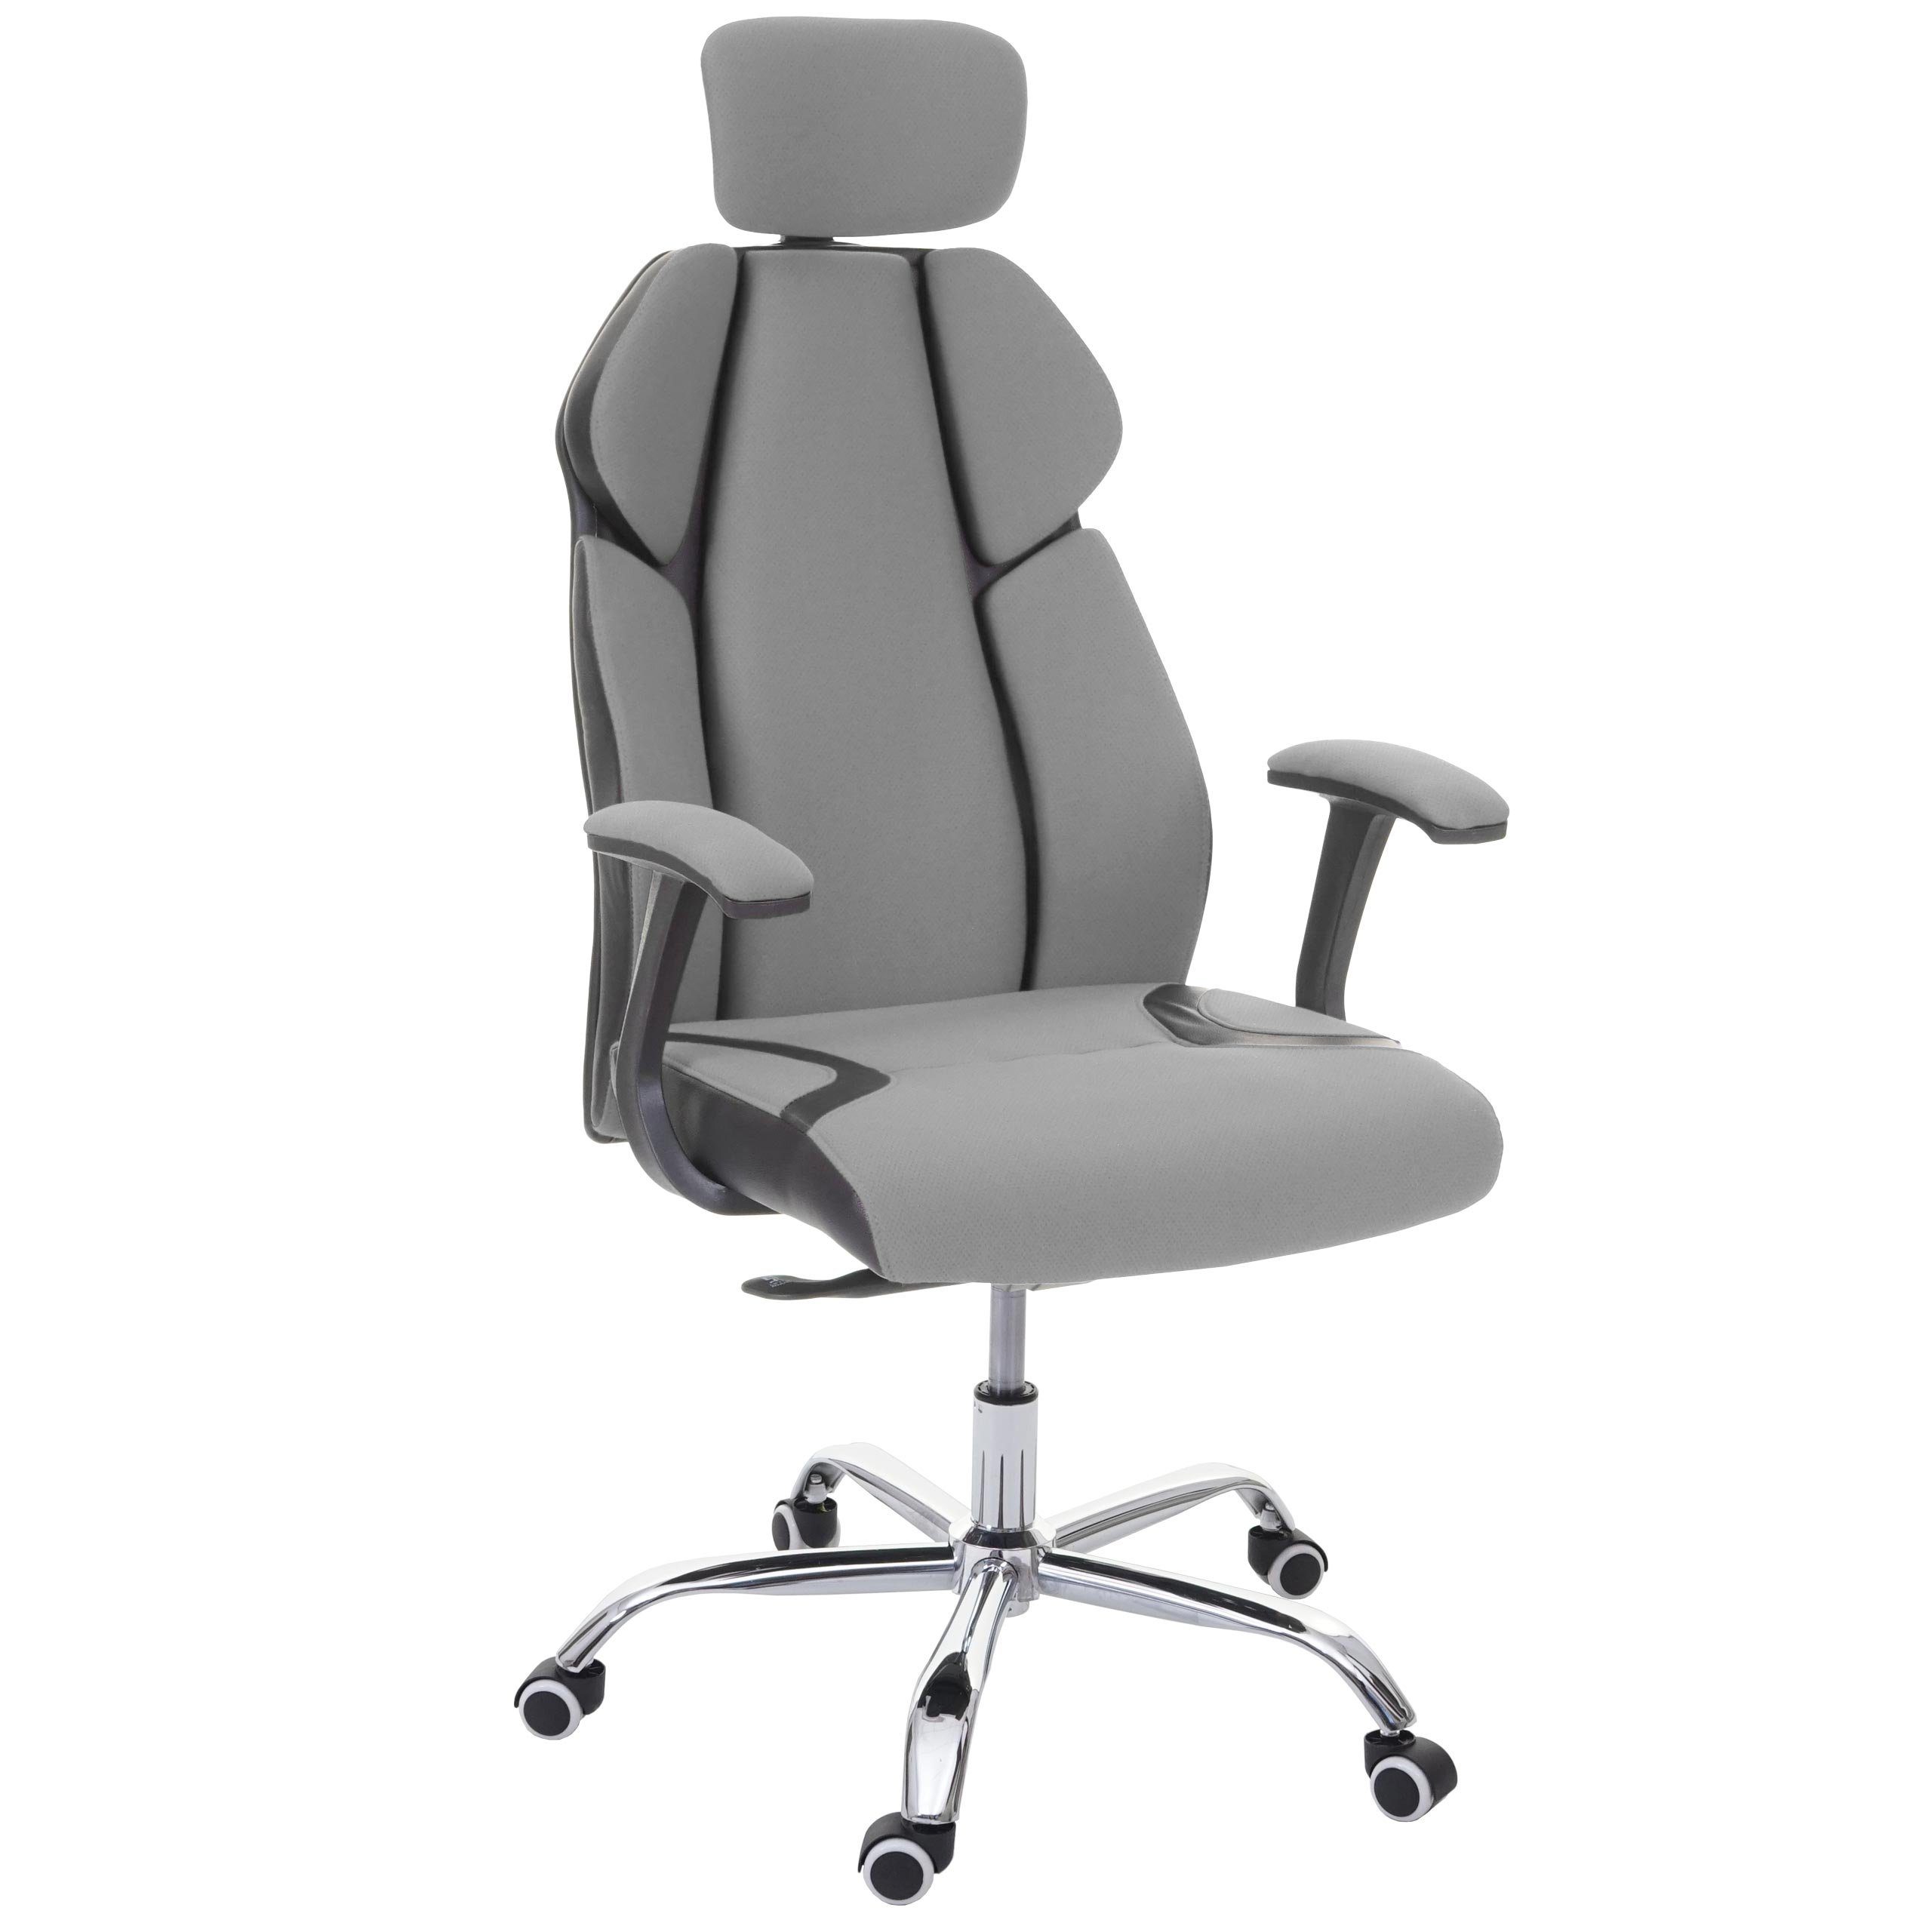 MCW Schreibtischstuhl MCW-F12, Sliding-Funktion, Wippfunktion arretierbar, Höhenverstellbare Kopfstütze, Sliding Sitz grau/schwarz